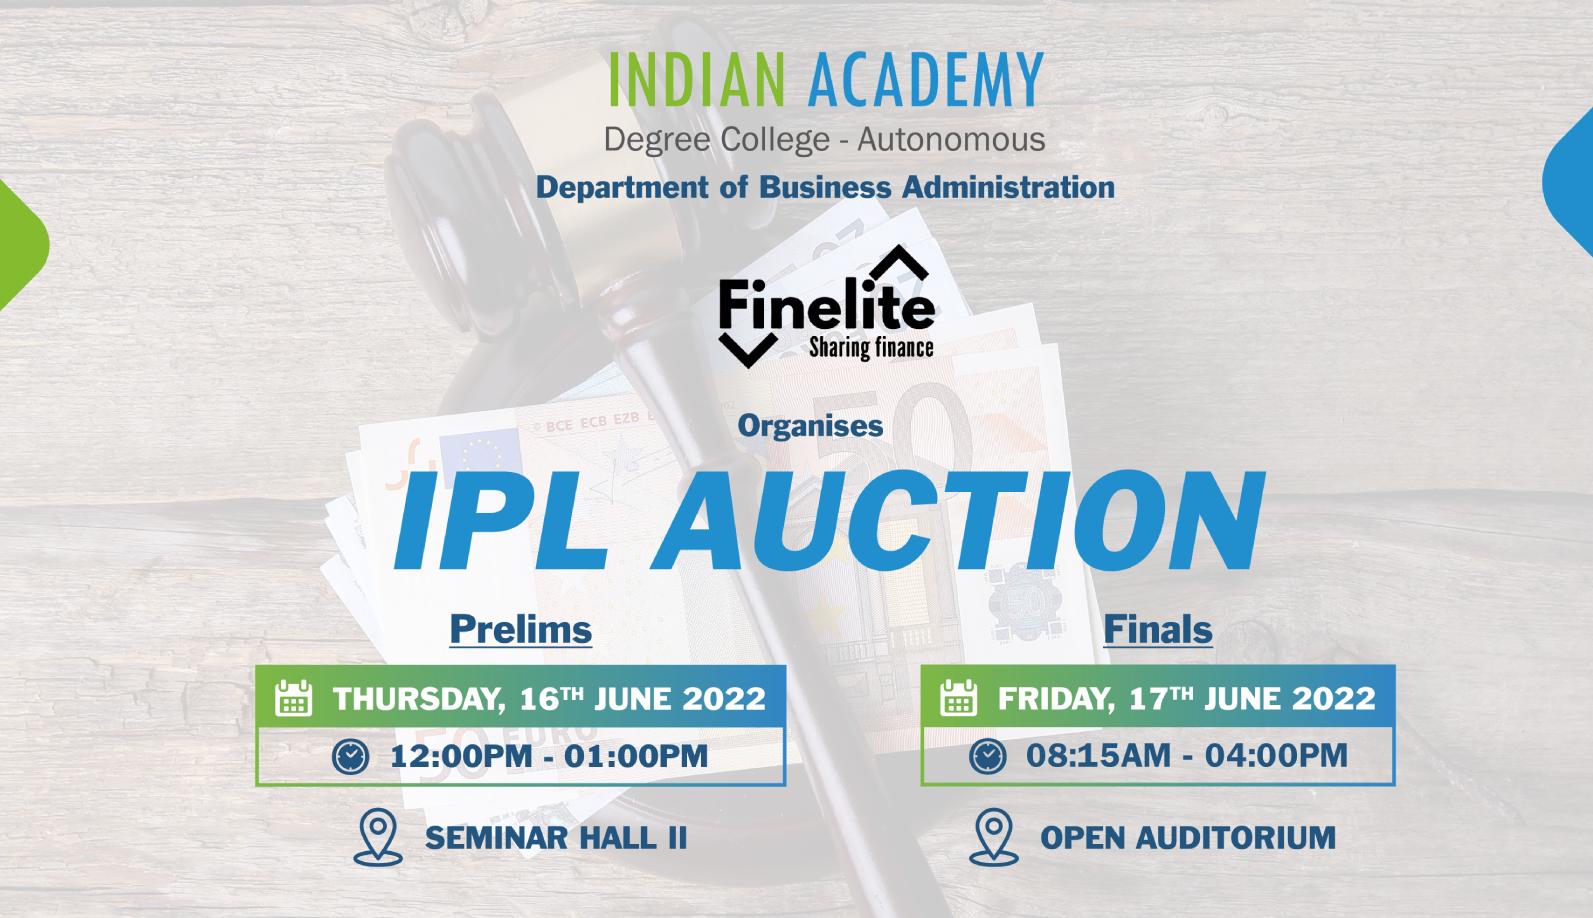 IPL Auction Intra Collegiate Activity